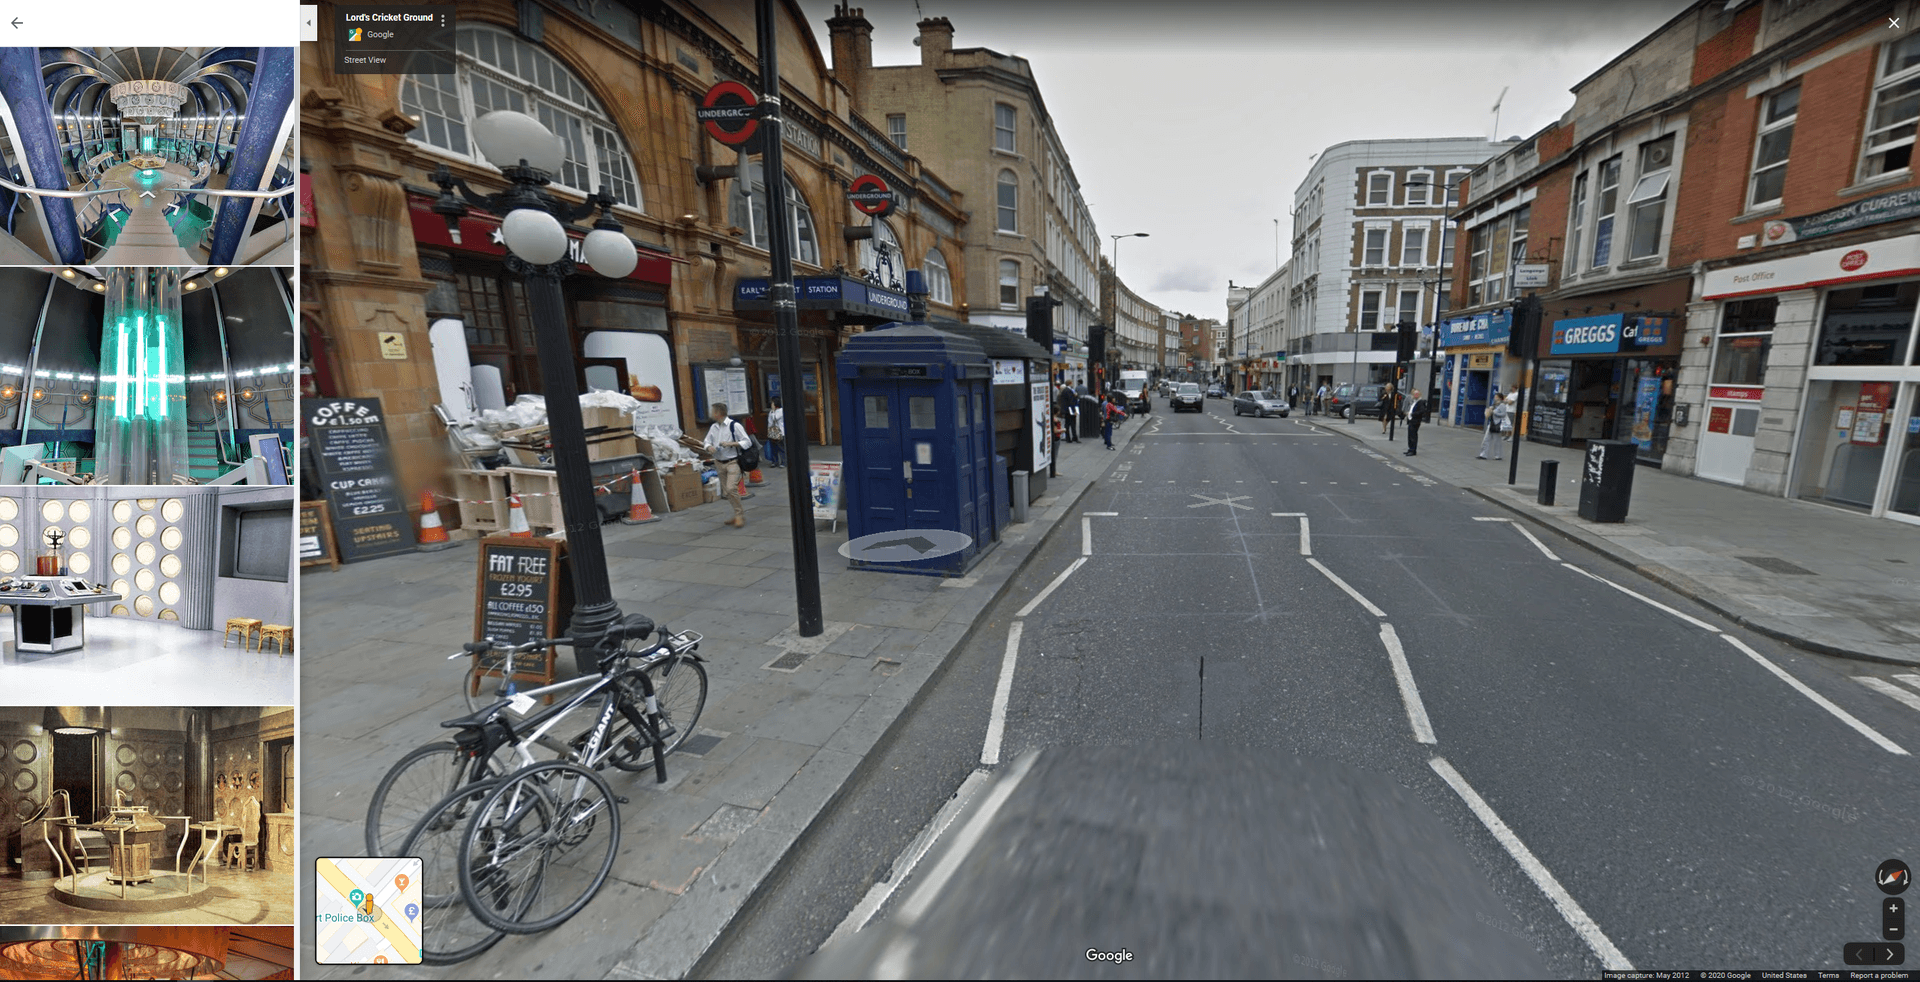 Für Fans der Serie "Dr. Who" hat Google ebenfalls eine kleine Überraschung eingebaut. Betreten Sie doch mal die blaue Box neben der Earls Court Station in London.